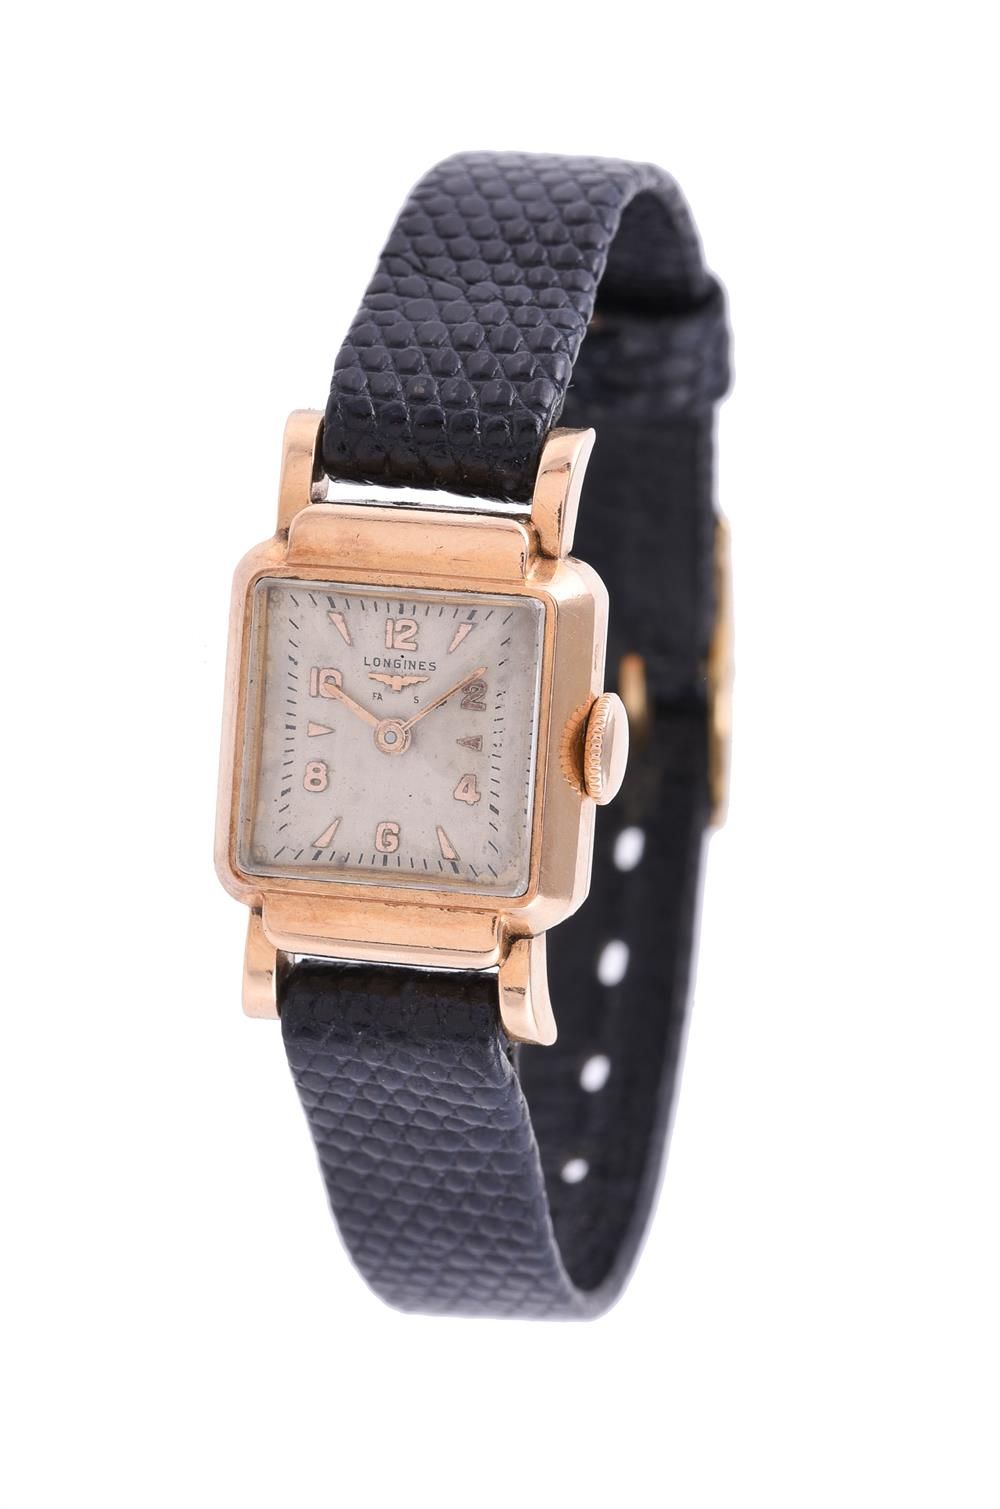 Y Longines, Lady's gold coloured wrist watch 
Y 浪琴表，女士金色腕表，约1950年机芯。Cal.15.18，手动&hellip;